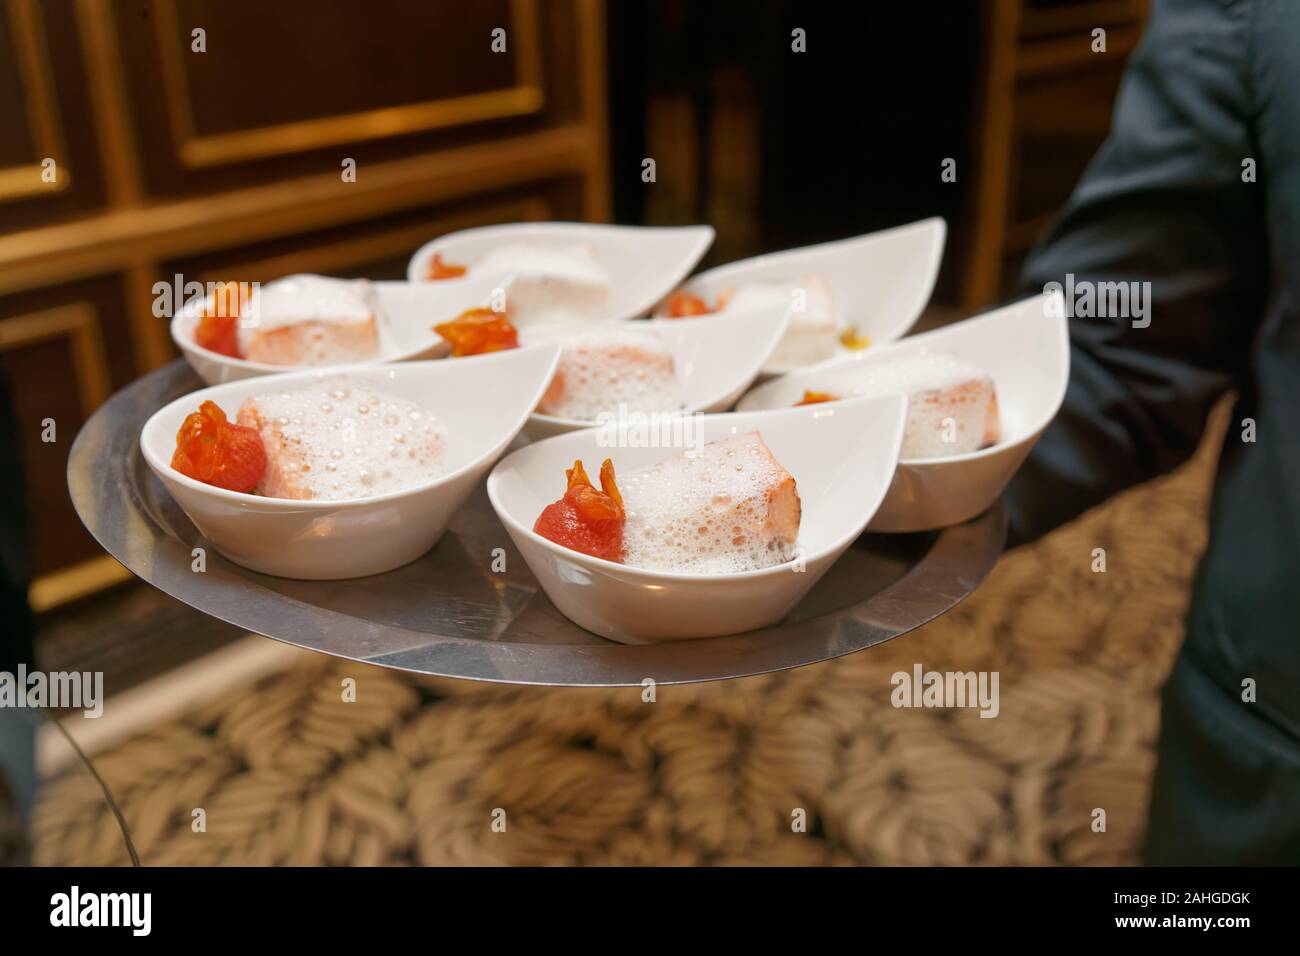 Il cameriere porta il vassoio con banchetti con piastre di cibo - salmone e salsa schiumoso Foto Stock